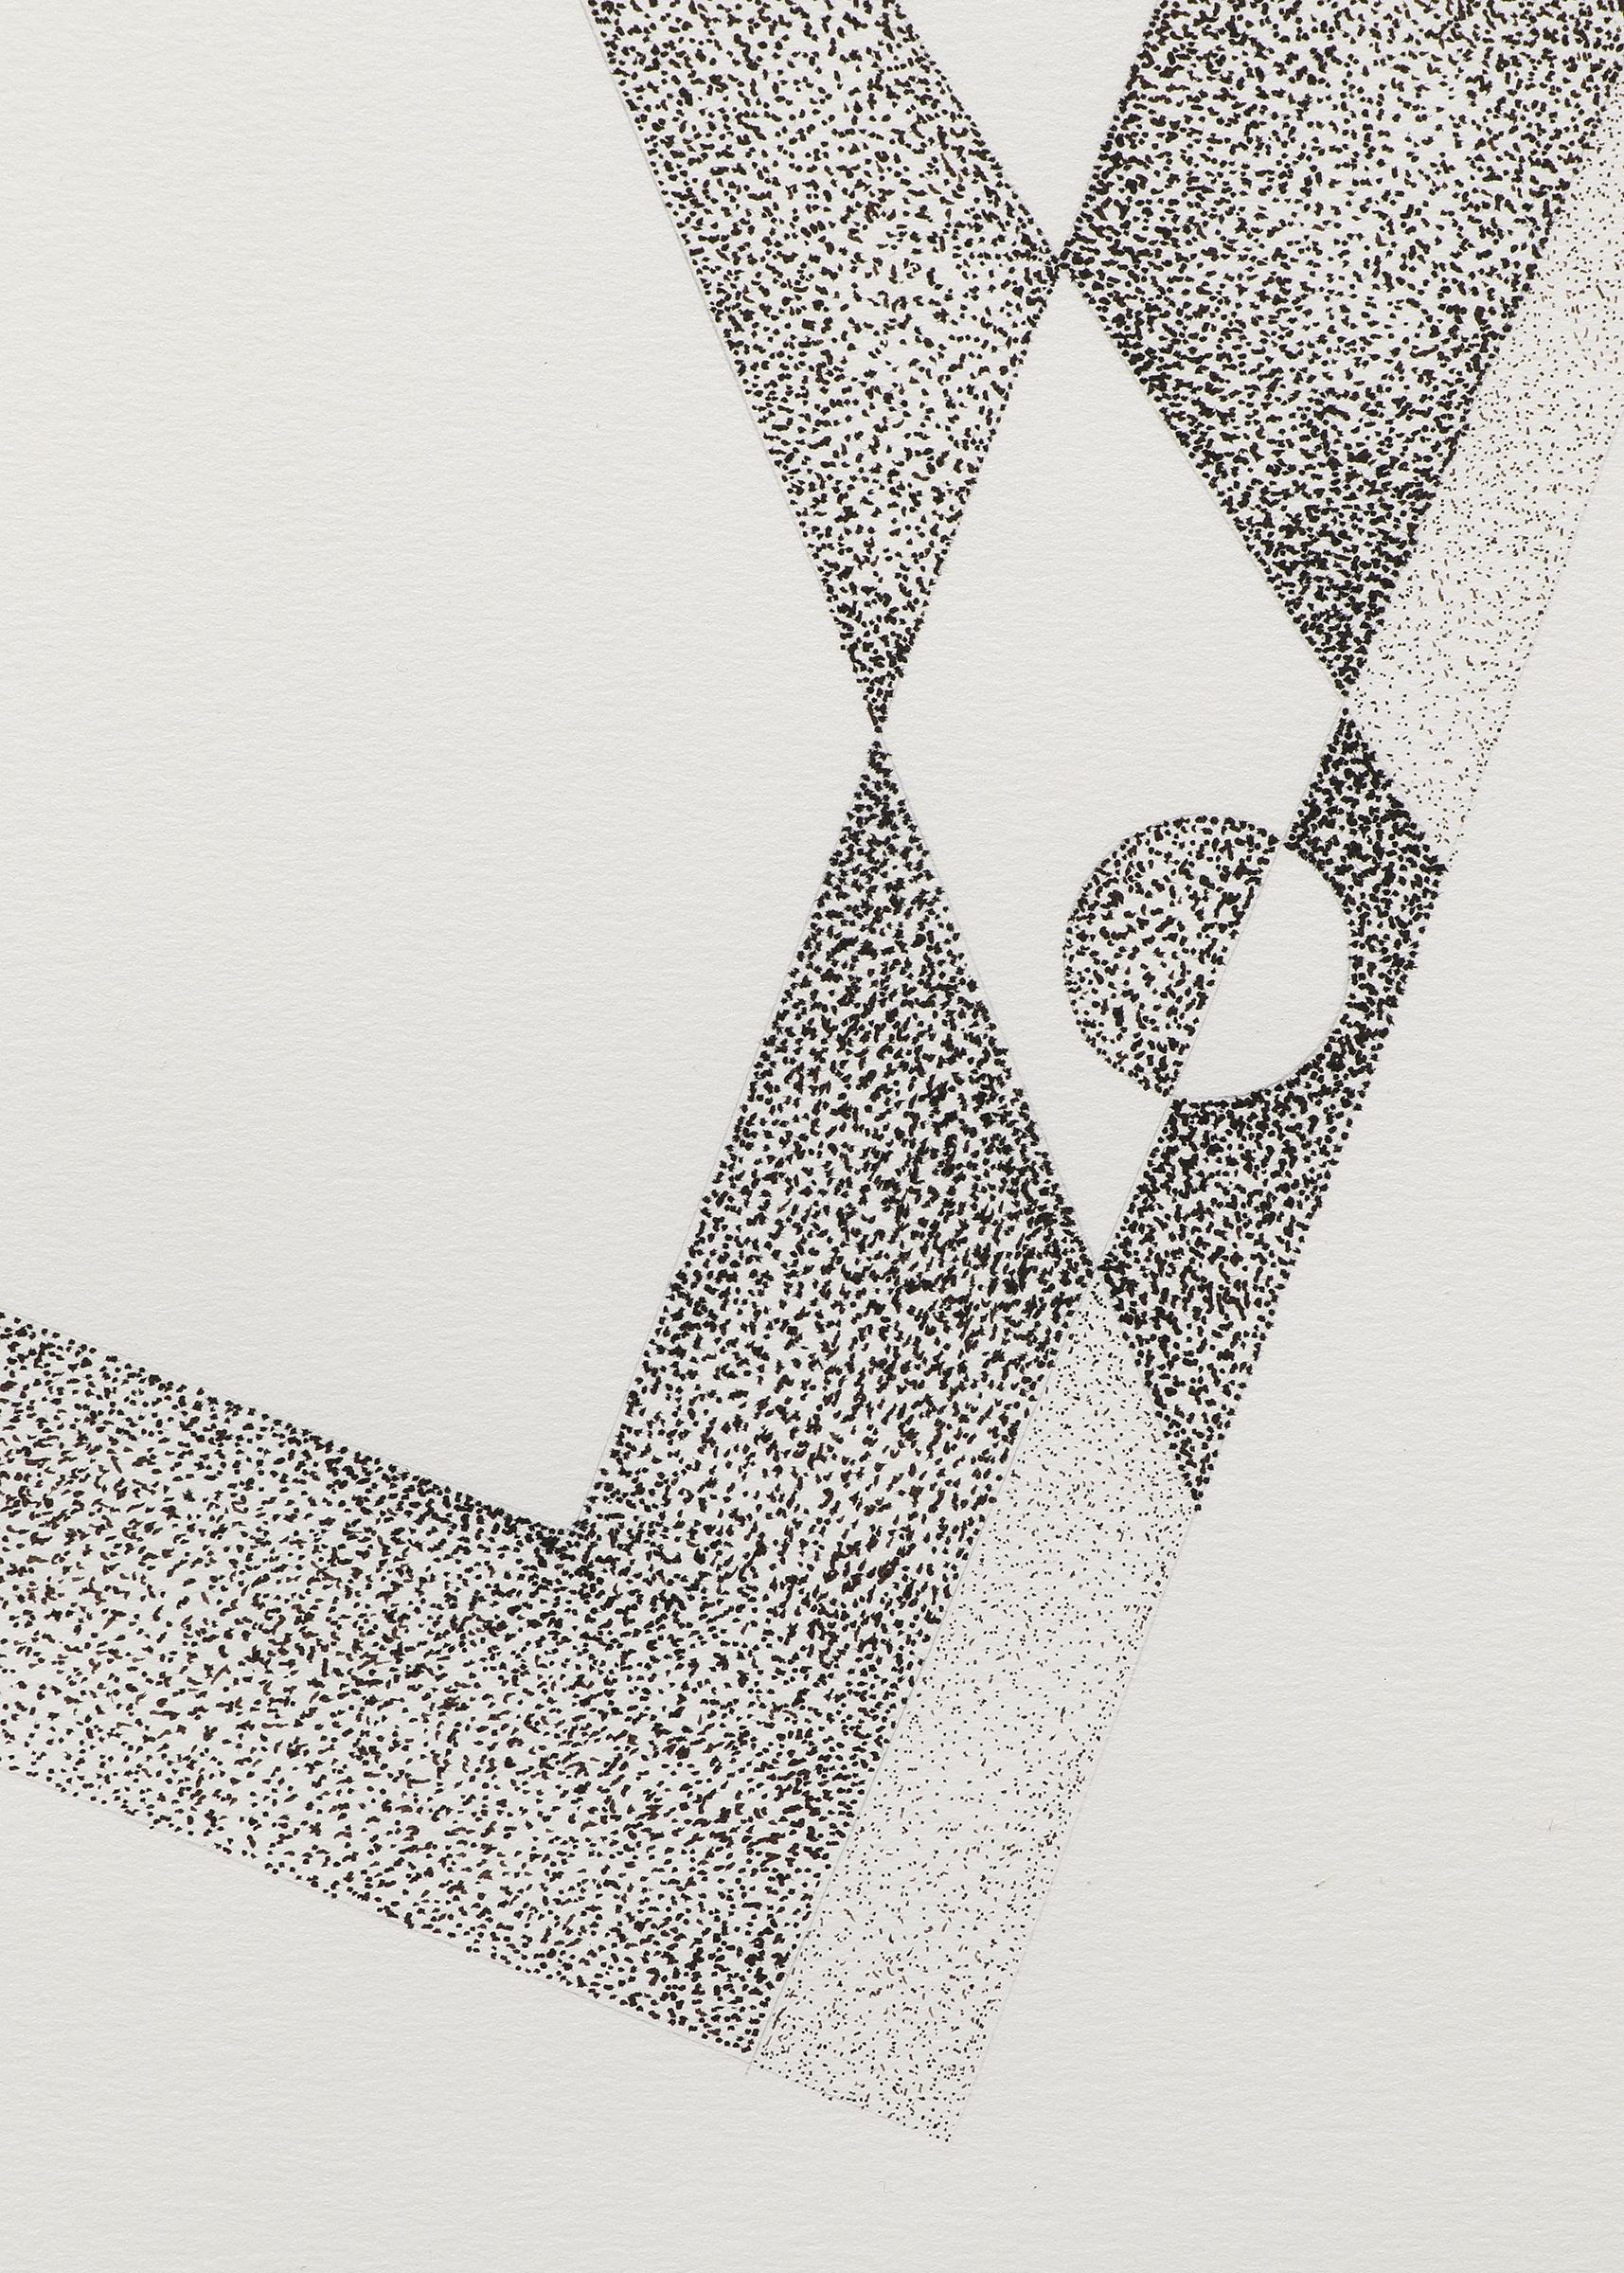 Dessin à la plume et au crayon sur papier de James Meek (né en 1928). Dessin géométrique abstrait. Présenté dans un cadre personnalisé avec des matériaux d'archives, les dimensions extérieures mesurent 25 x 19 ¼ x 1 ½ pouces. La taille de l'image